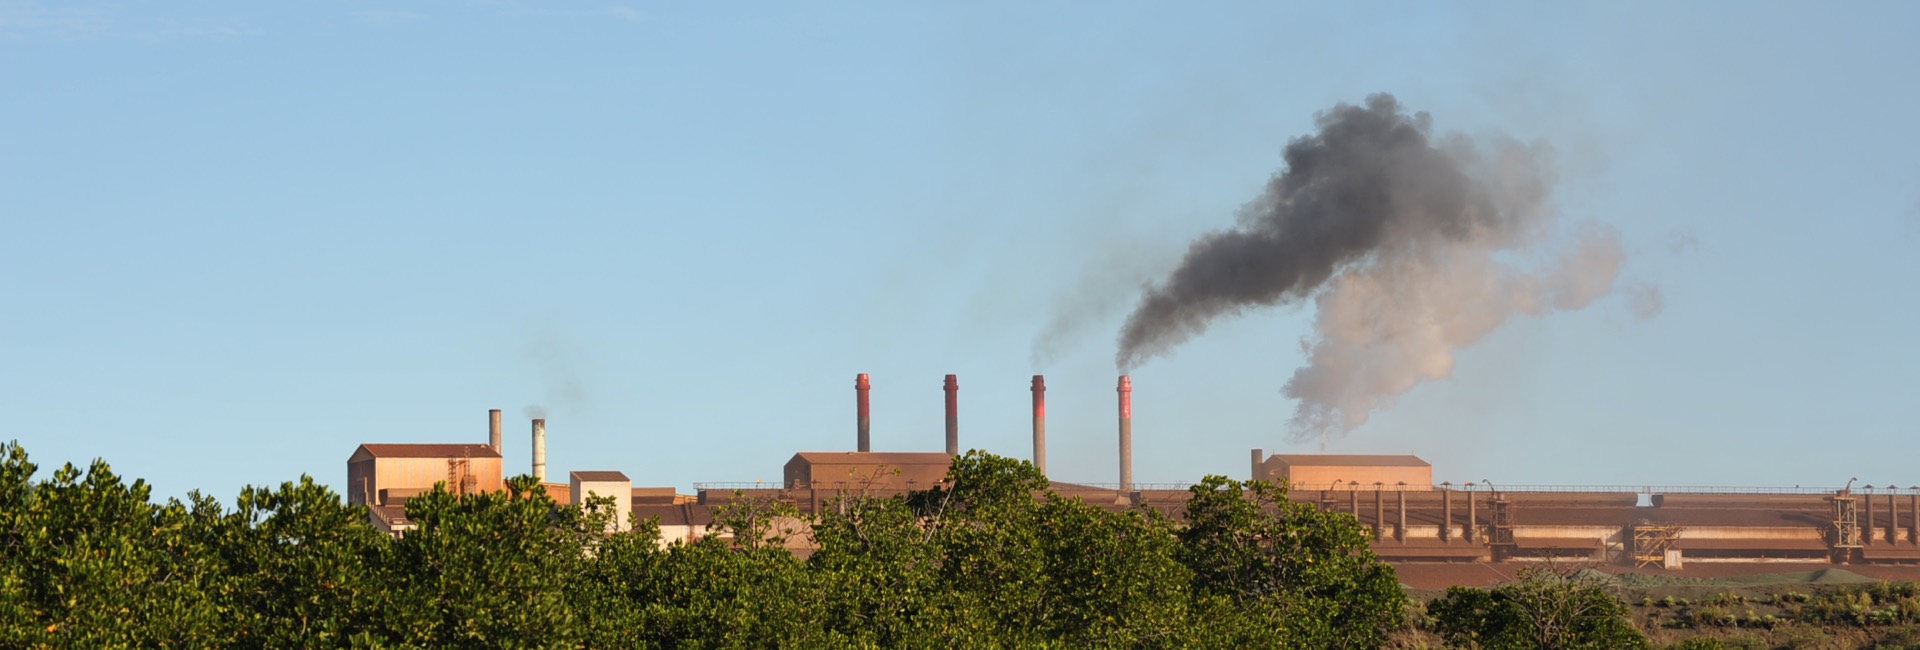 Enquête publique centrale charbon SLN Eramet